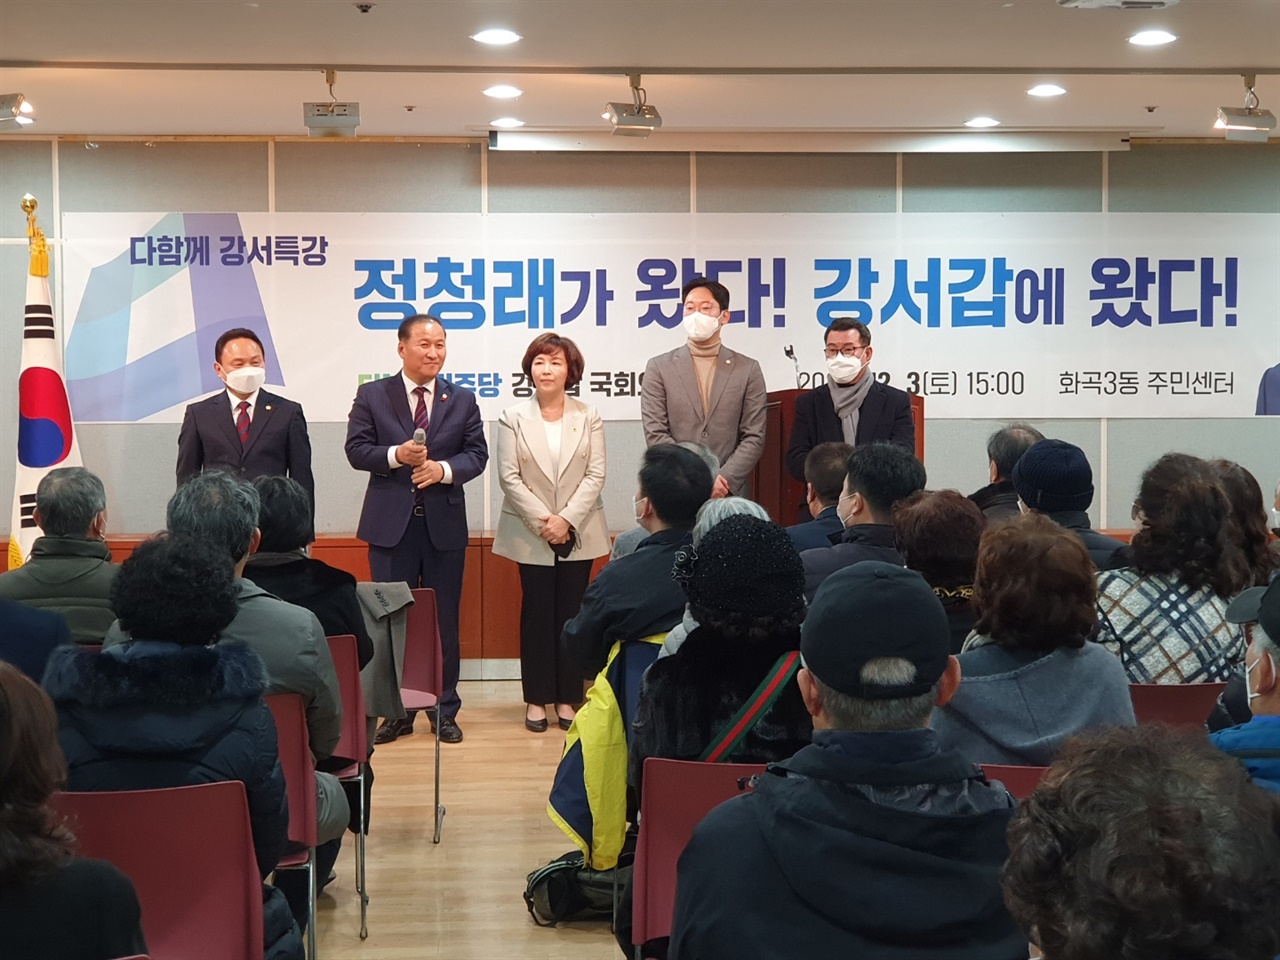 12월 3일 오후 3시 서울 강서구 화곡 3동 주민센터에서 더불어민주당 강선우 국회의원(강서 갑)이 개최한 당원교육 행사에서 지역정치인들이 인사를 하고 있다.